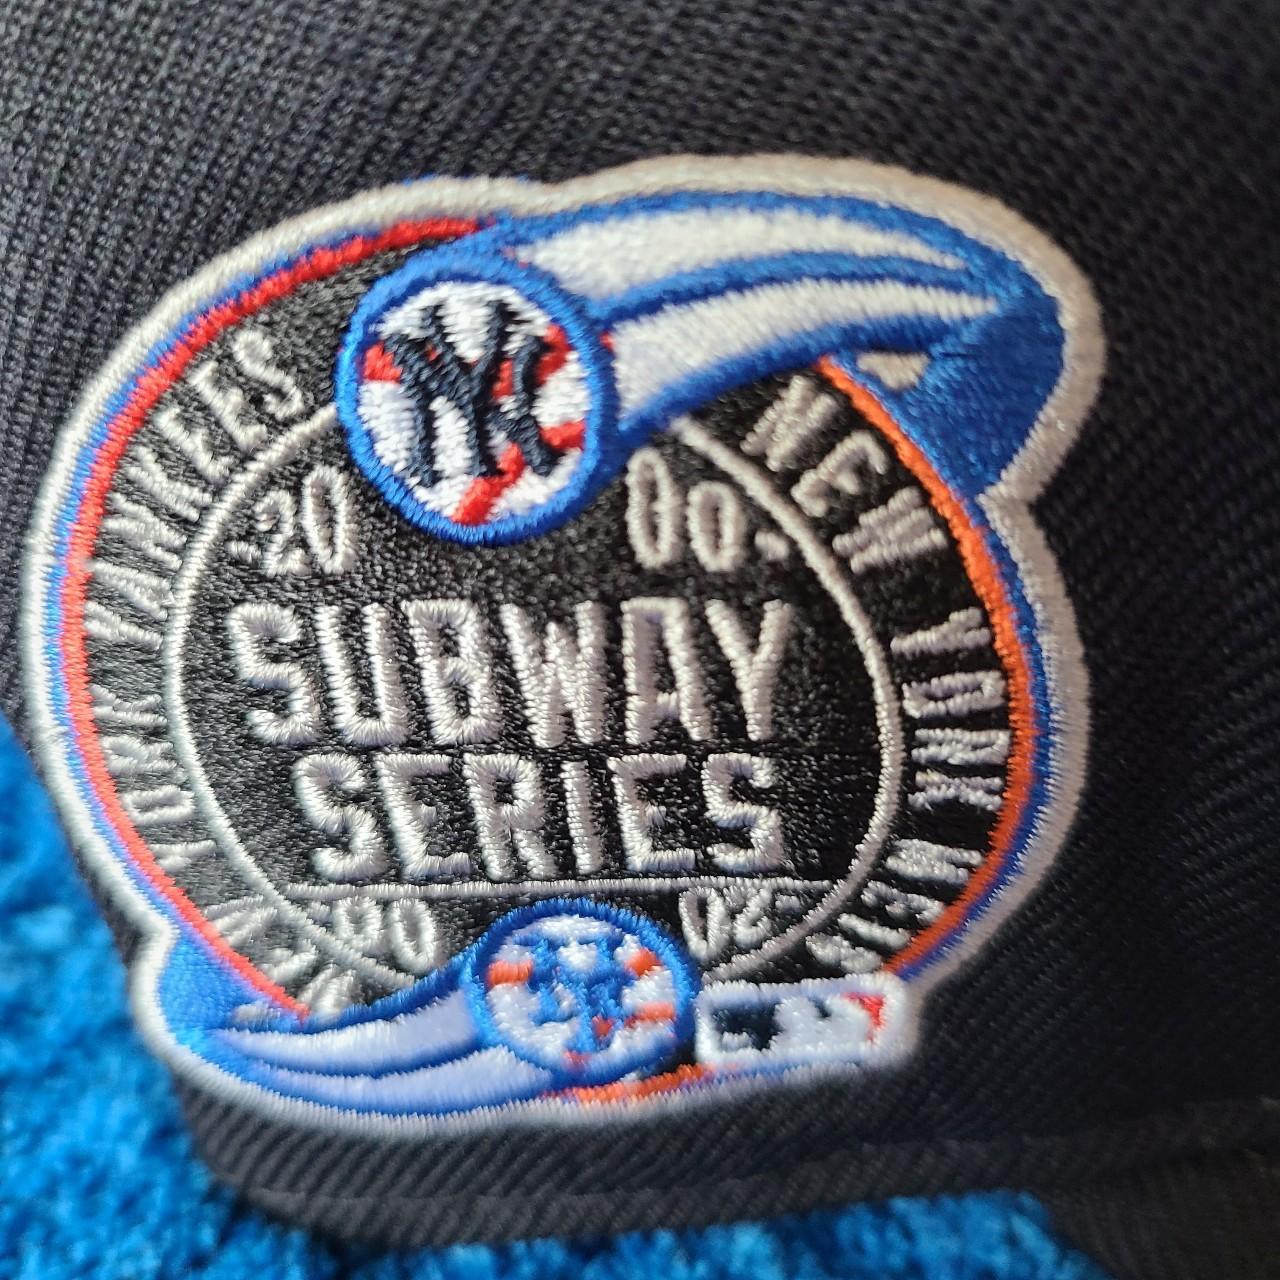 Men's New York Yankees New Era Navy MLB x Awake 2.0 Subway Series